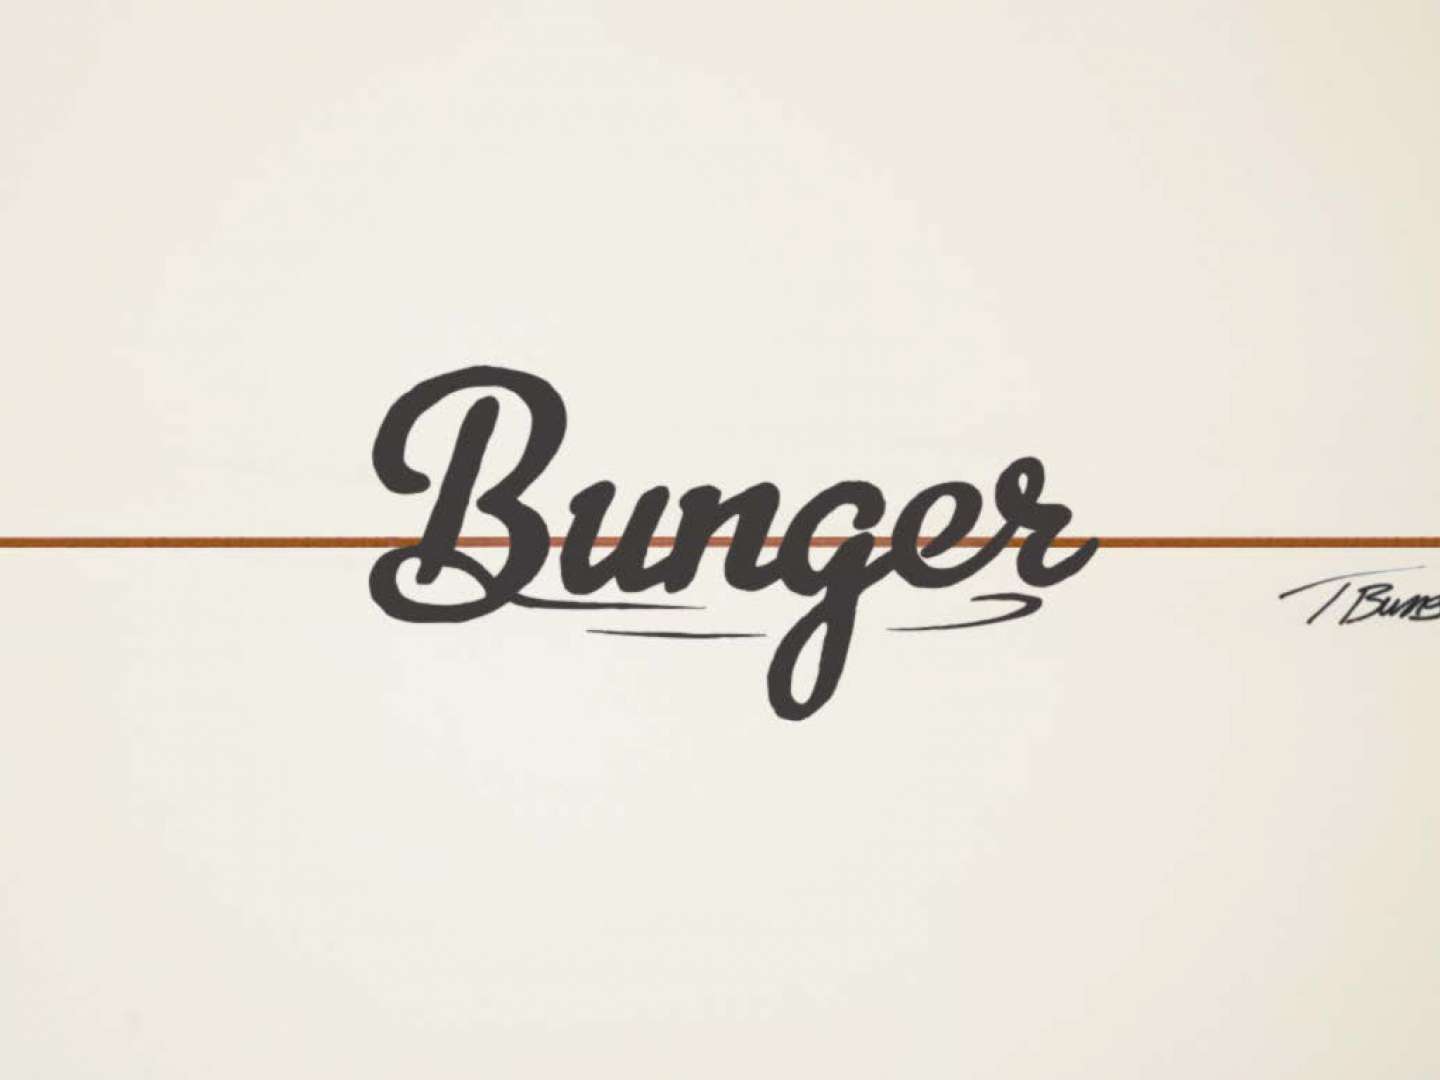 Bunger Surf Rebranding